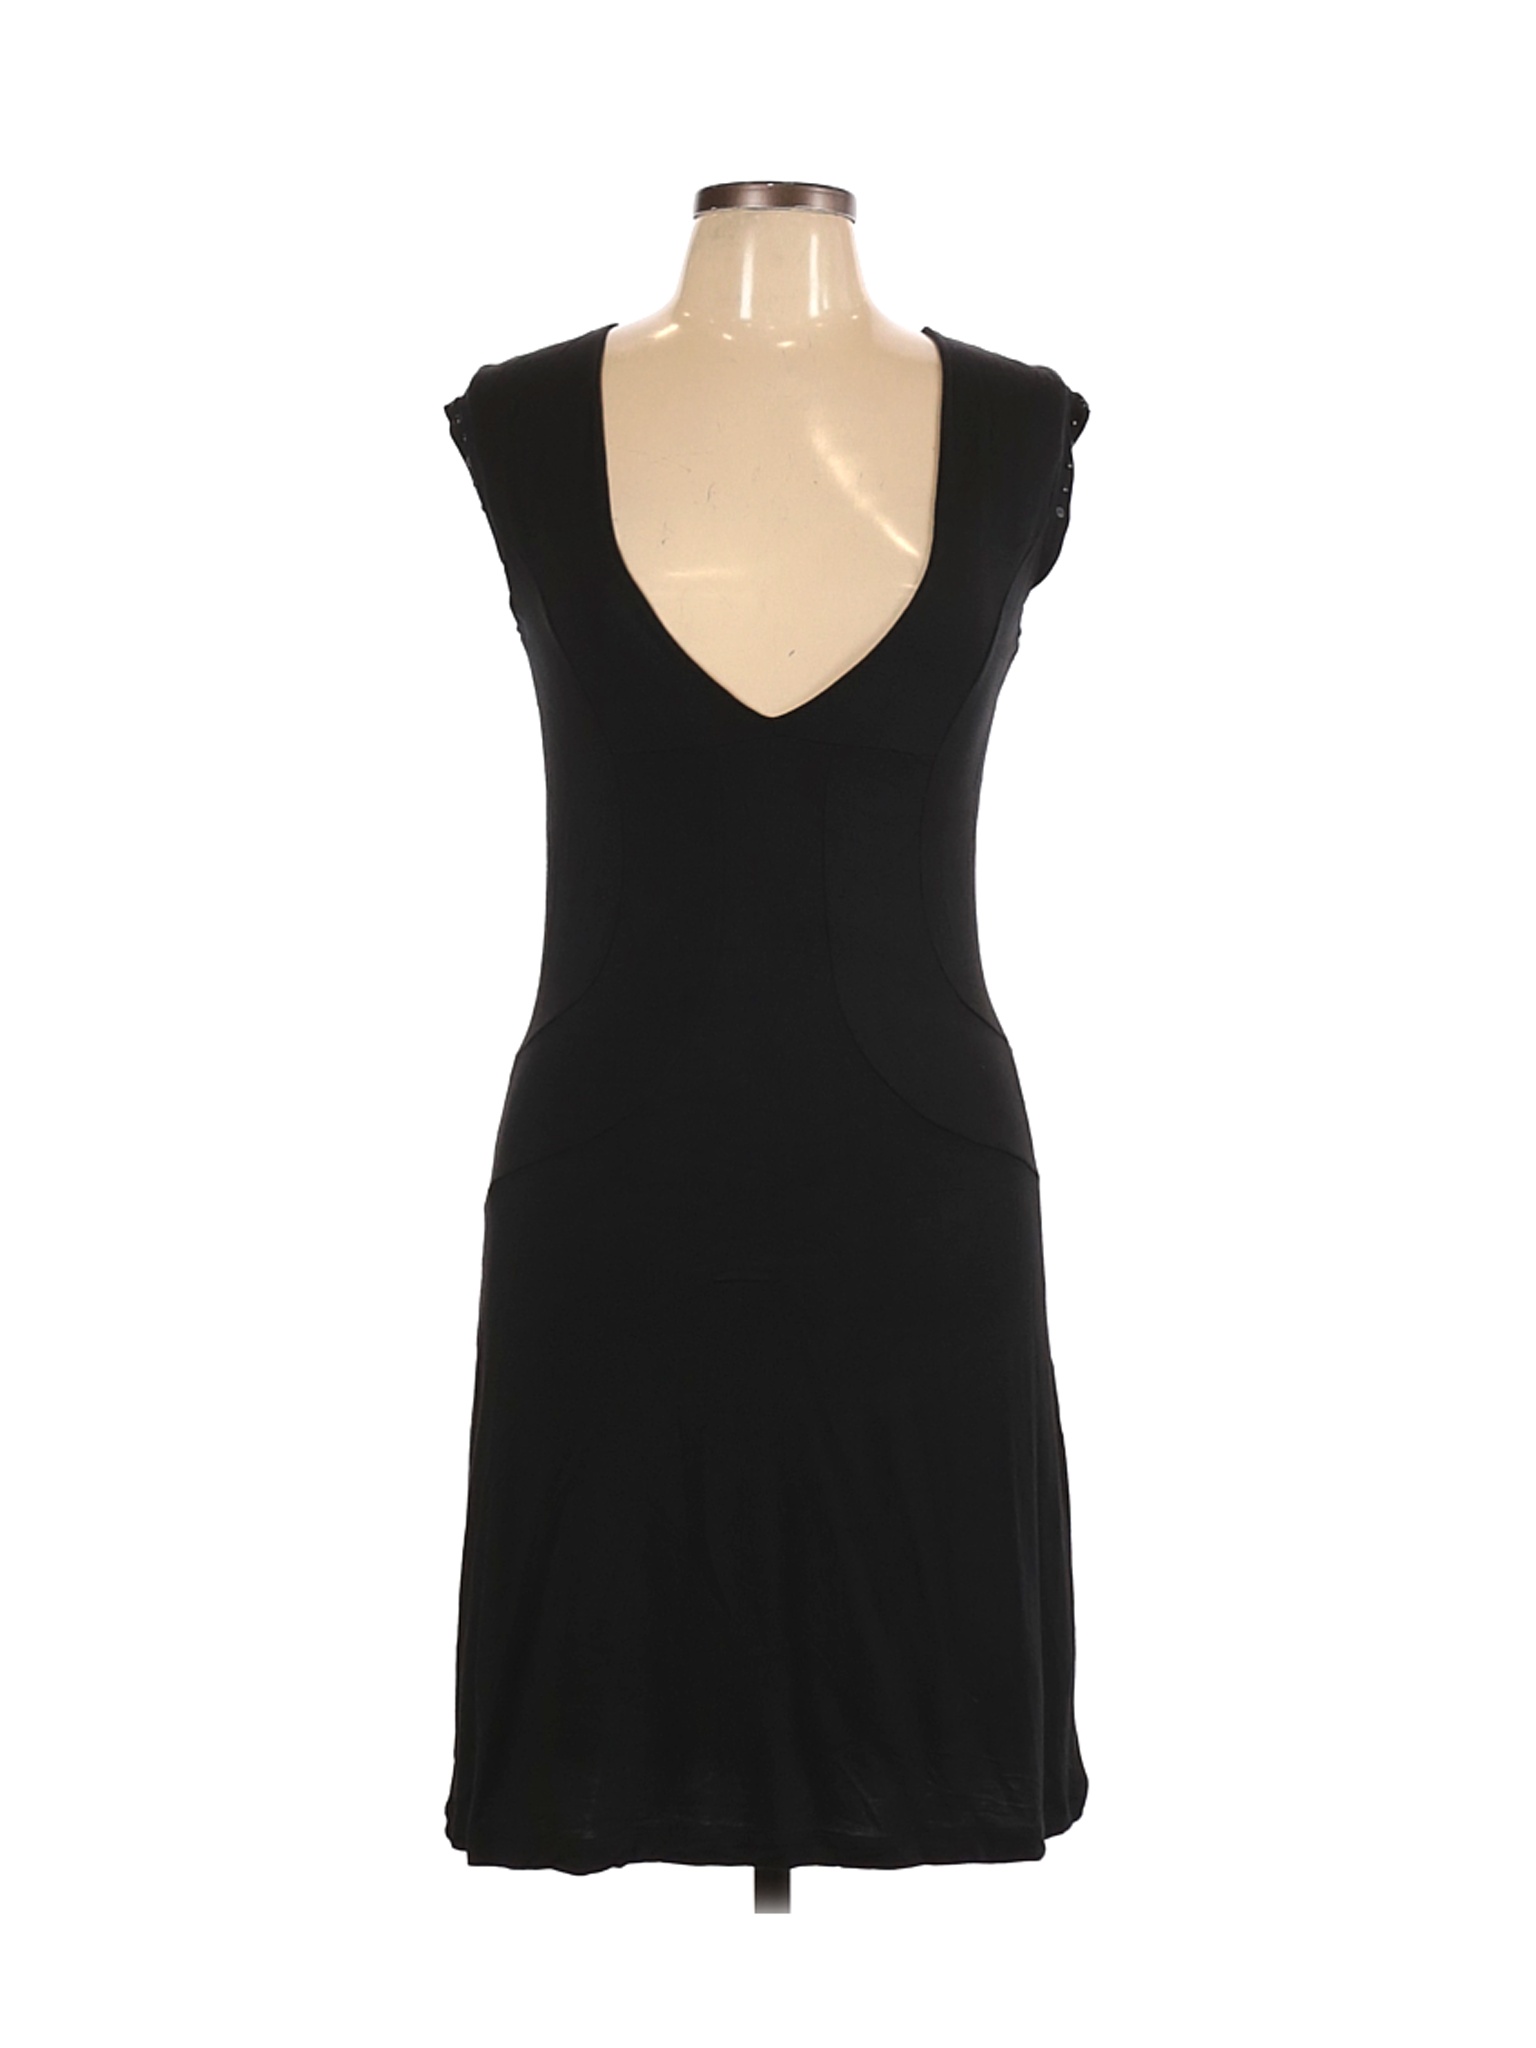 Diesel Women Black Casual Dress L | eBay